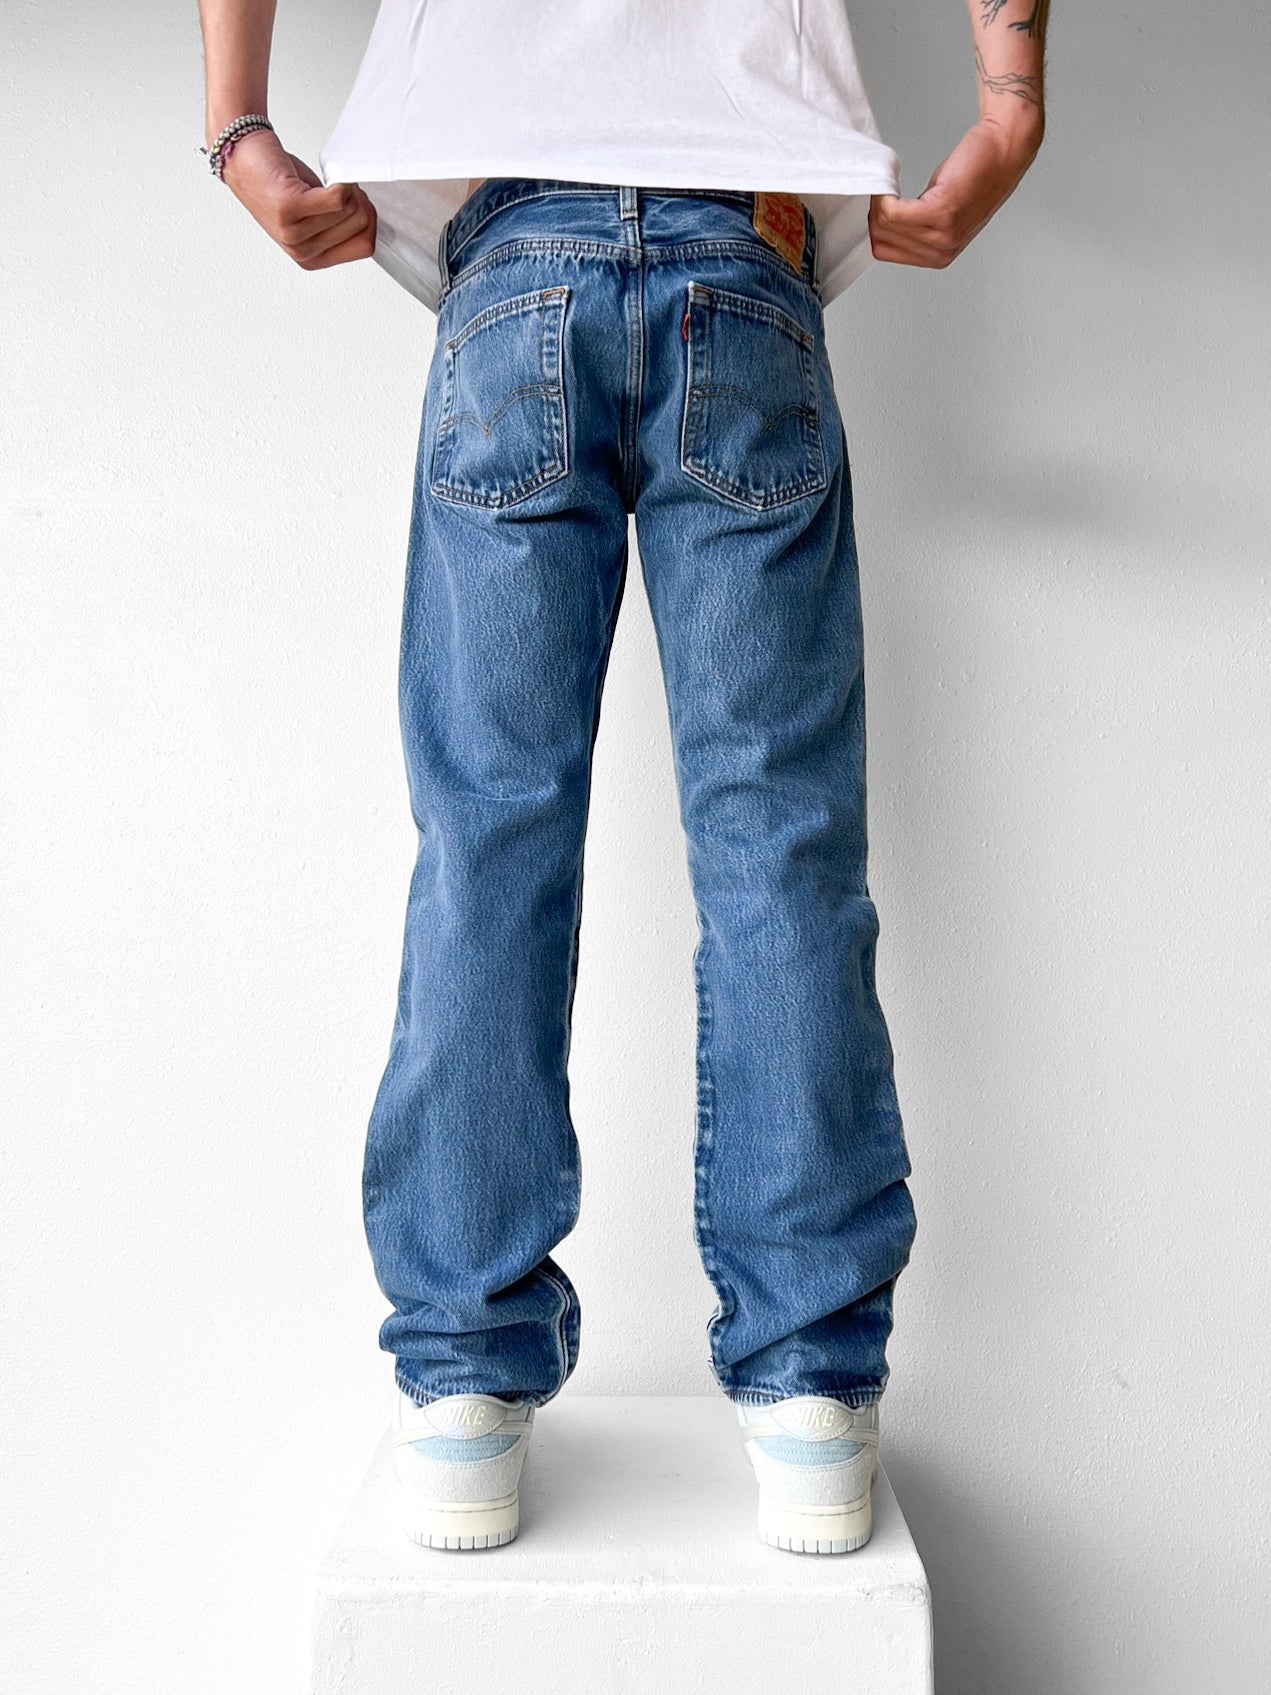 Levi’s 501 Jeans - 33 x 36